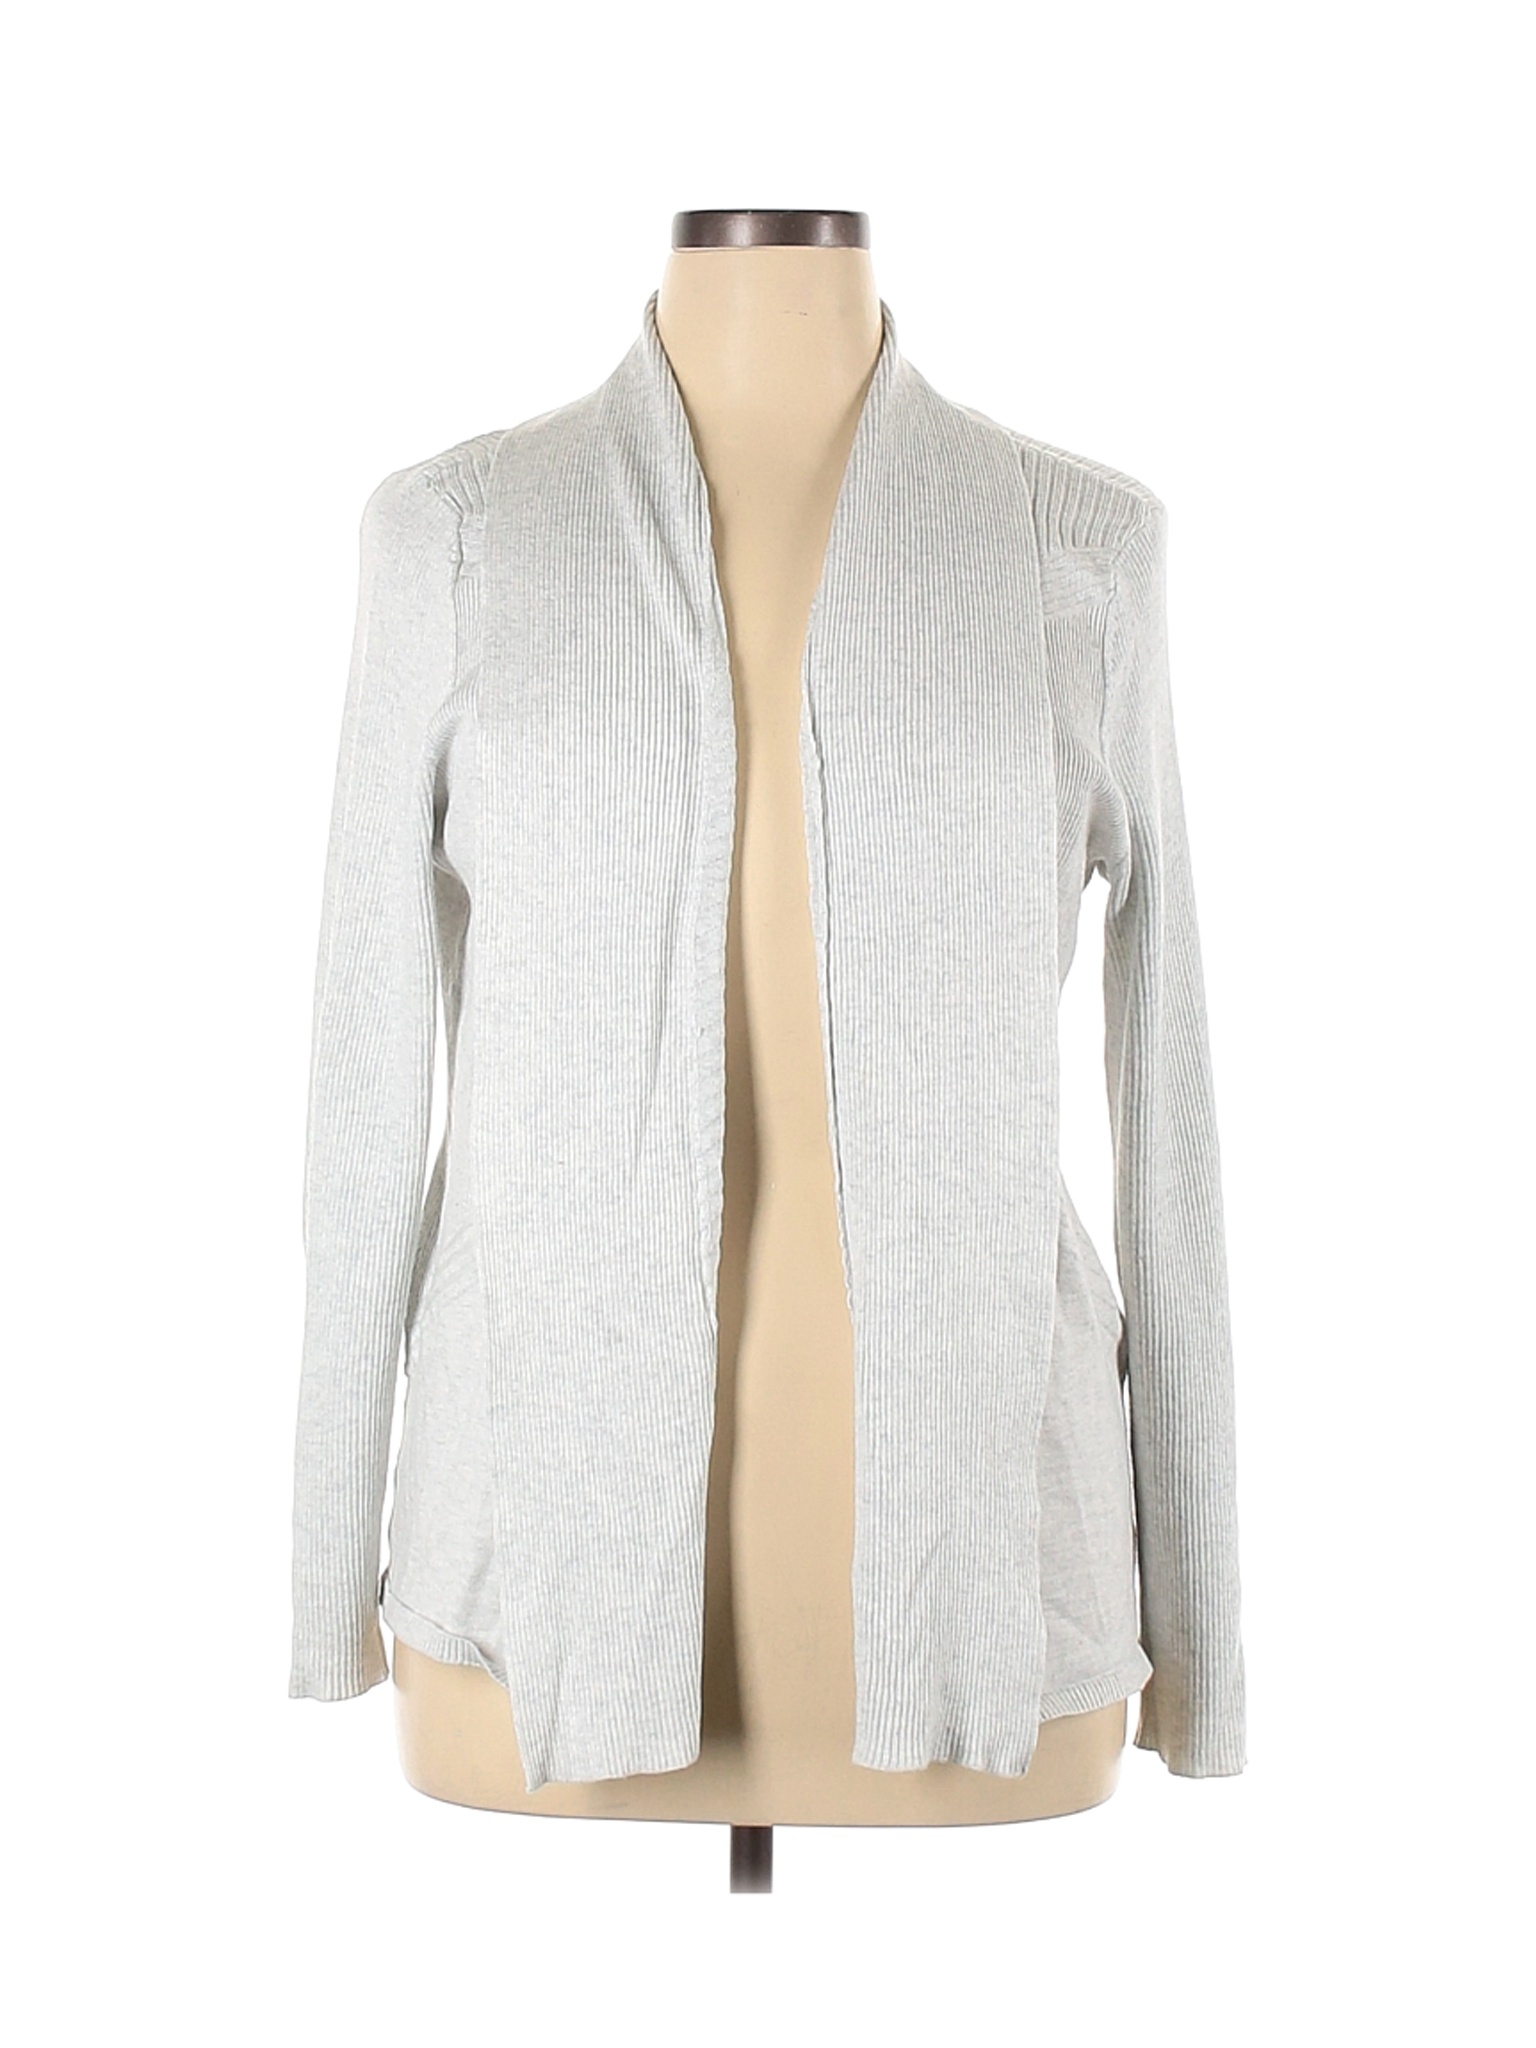 Verve Ami Women Silver Cardigan XL | eBay